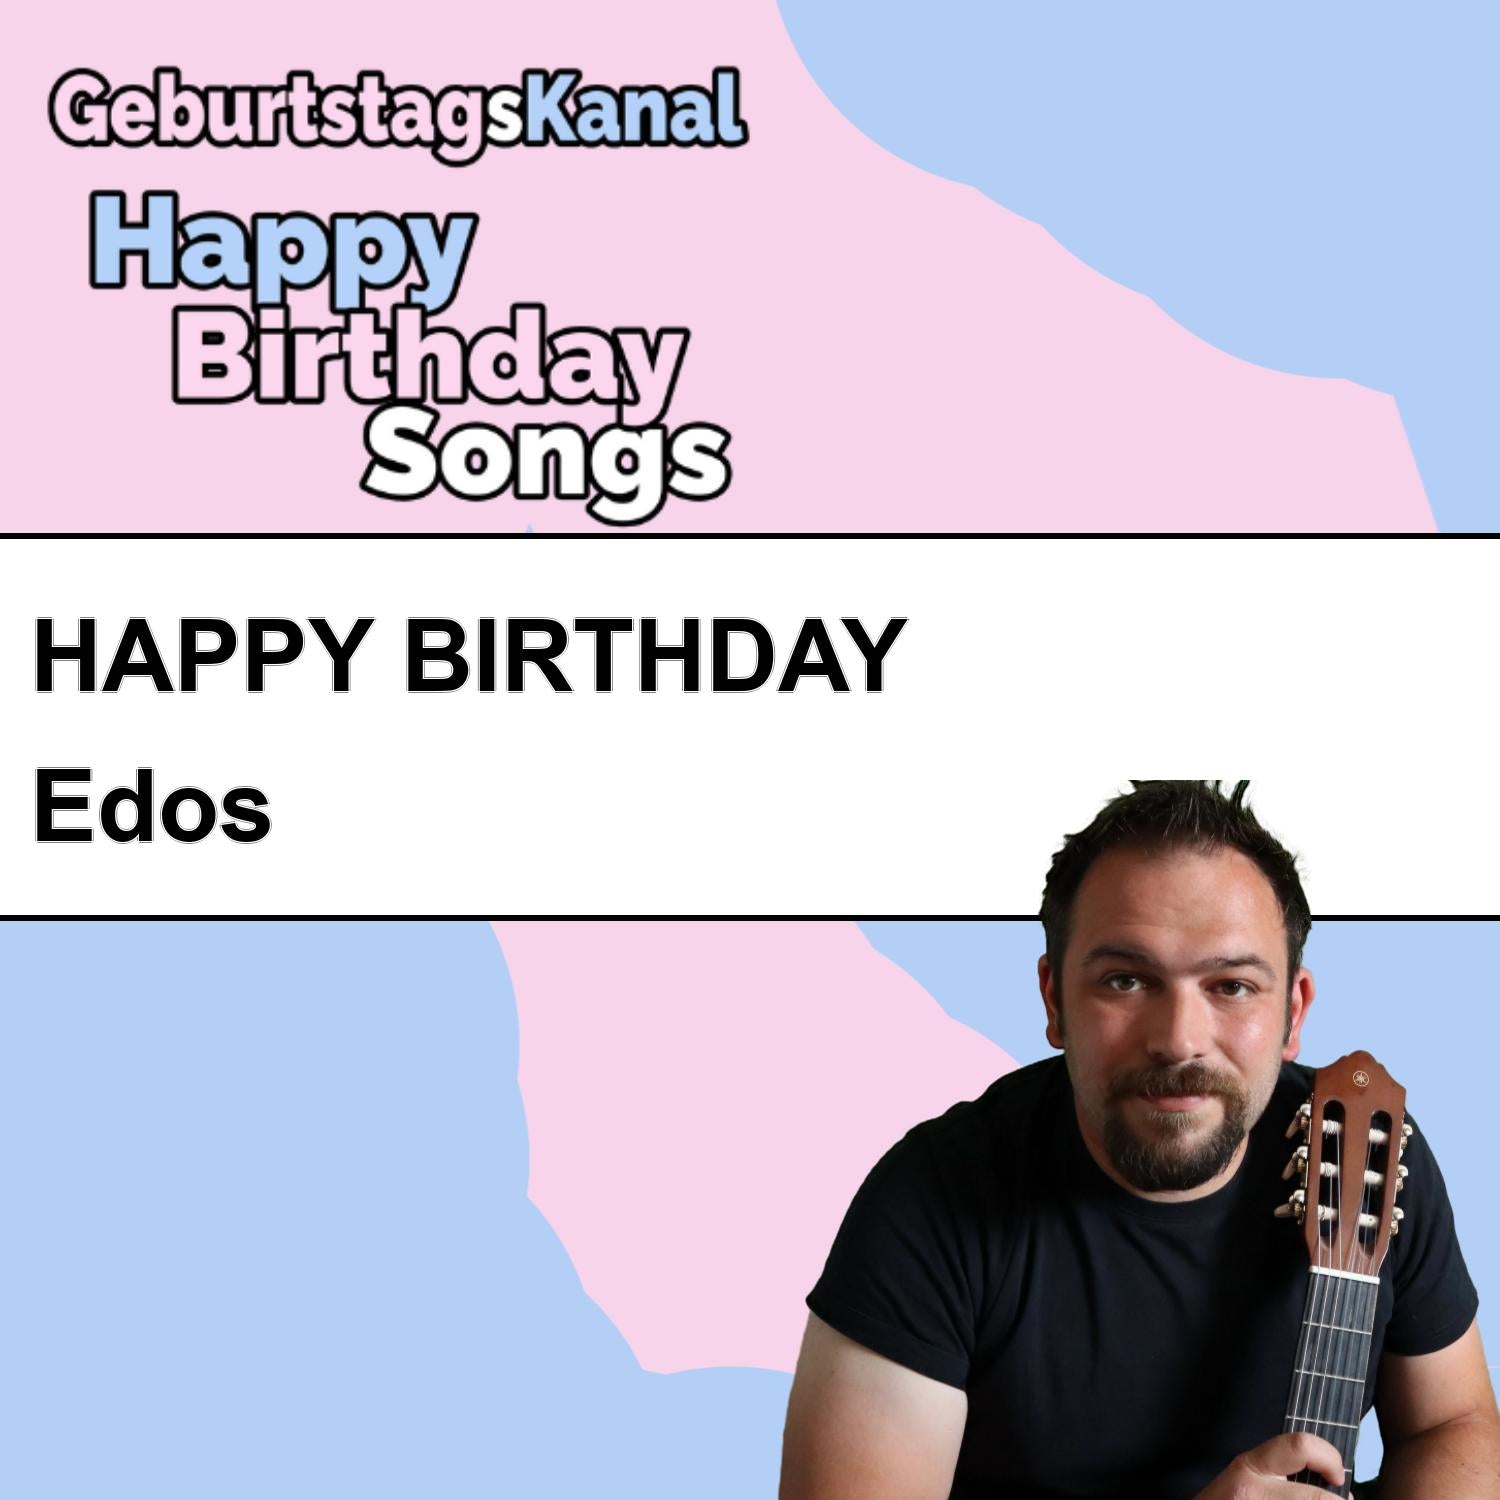 Produktbild Happy Birthday to you Edos mit Wunschgrußbotschaft